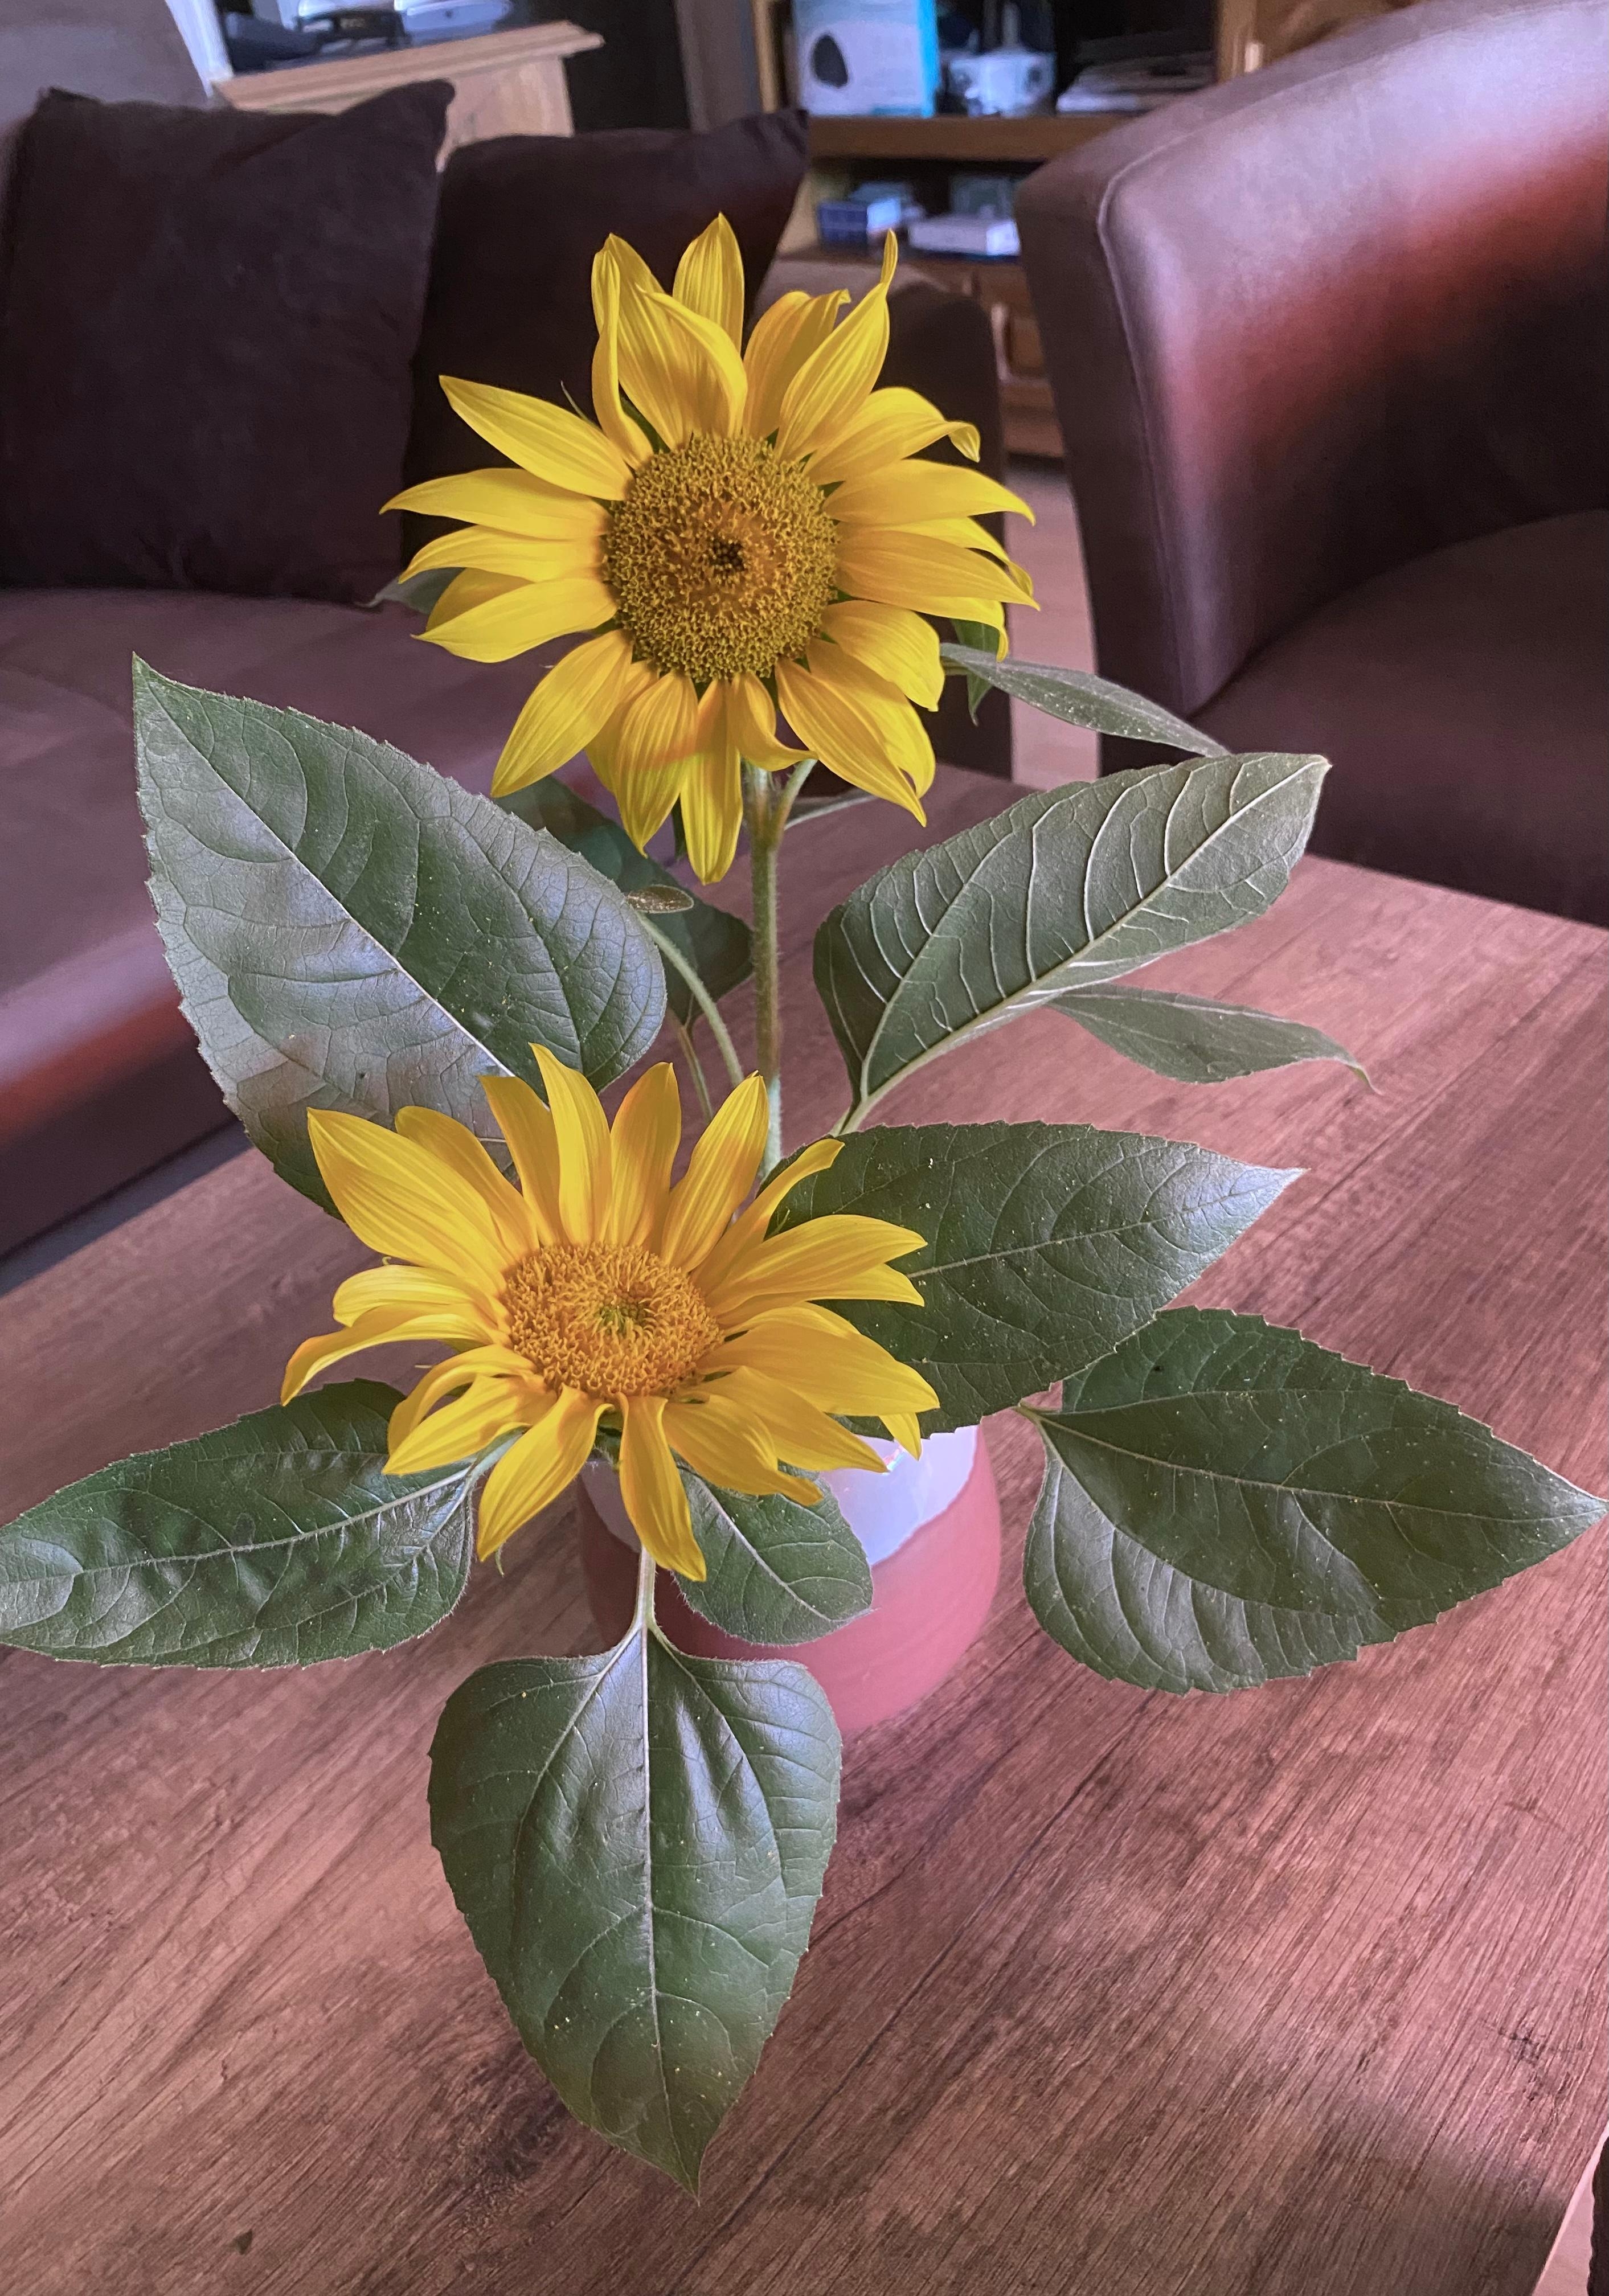 Die Zeit der schönen Sonnenblumen 🌻
#blumenliebe #deko #sonne #sommer